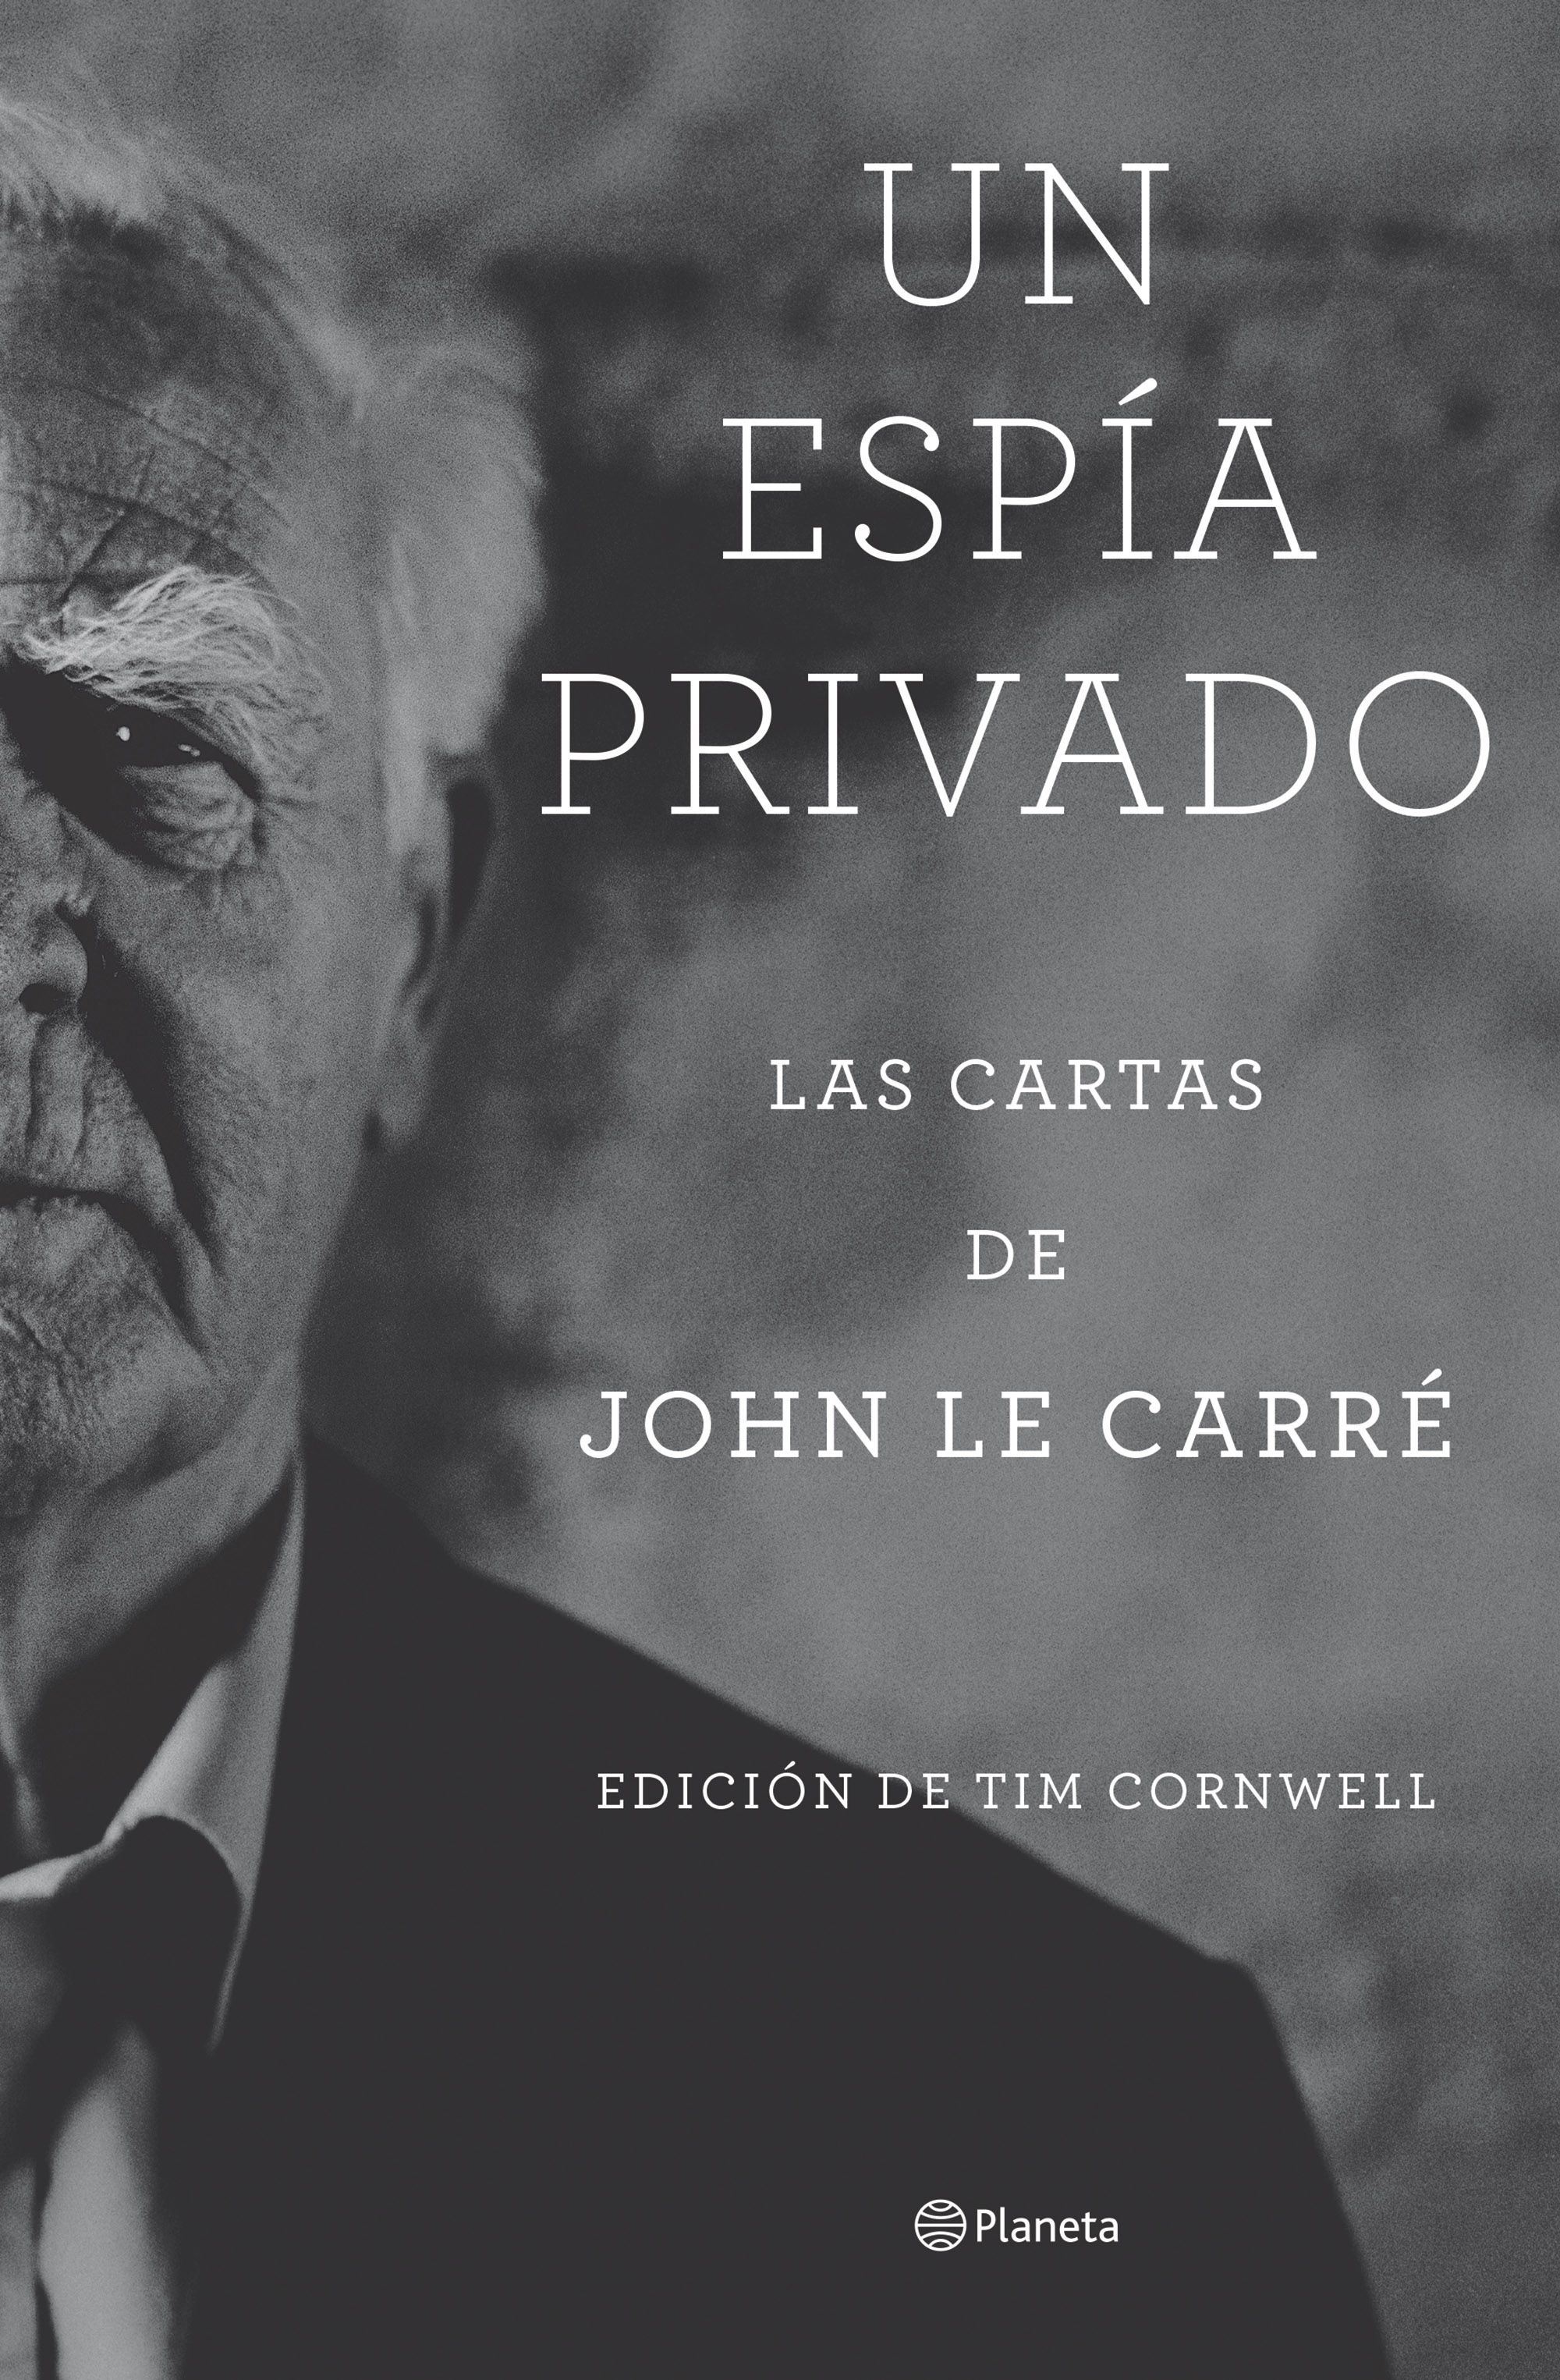 Espía privado, Un "Las cartas de John le Carré"